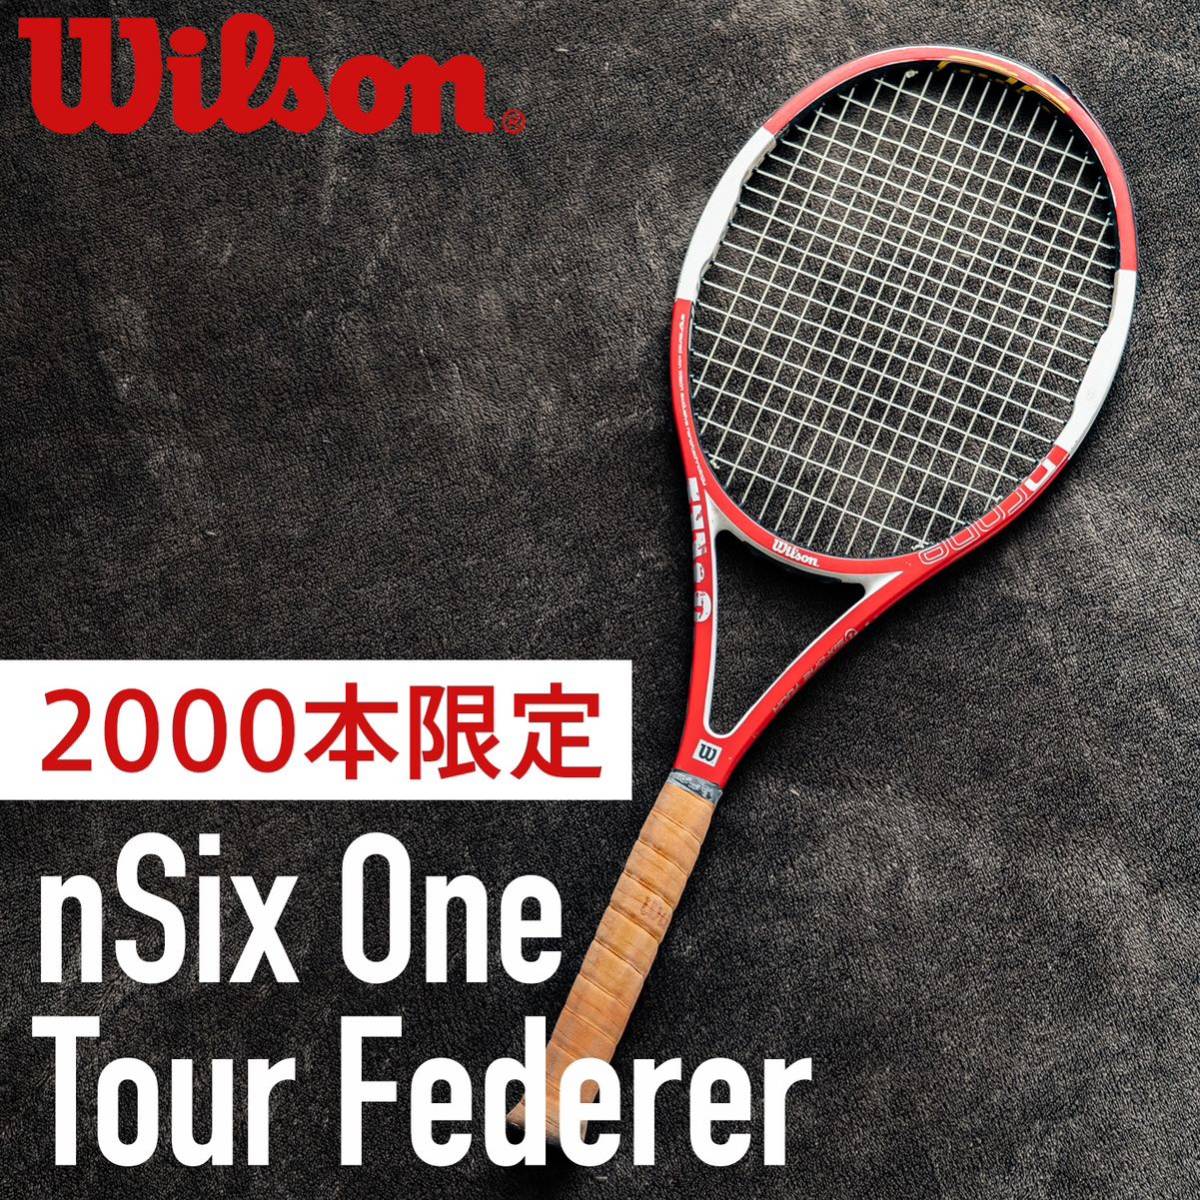 激レア全世界2,000本限定販売品】nSix One Tour Federer ウィルソン